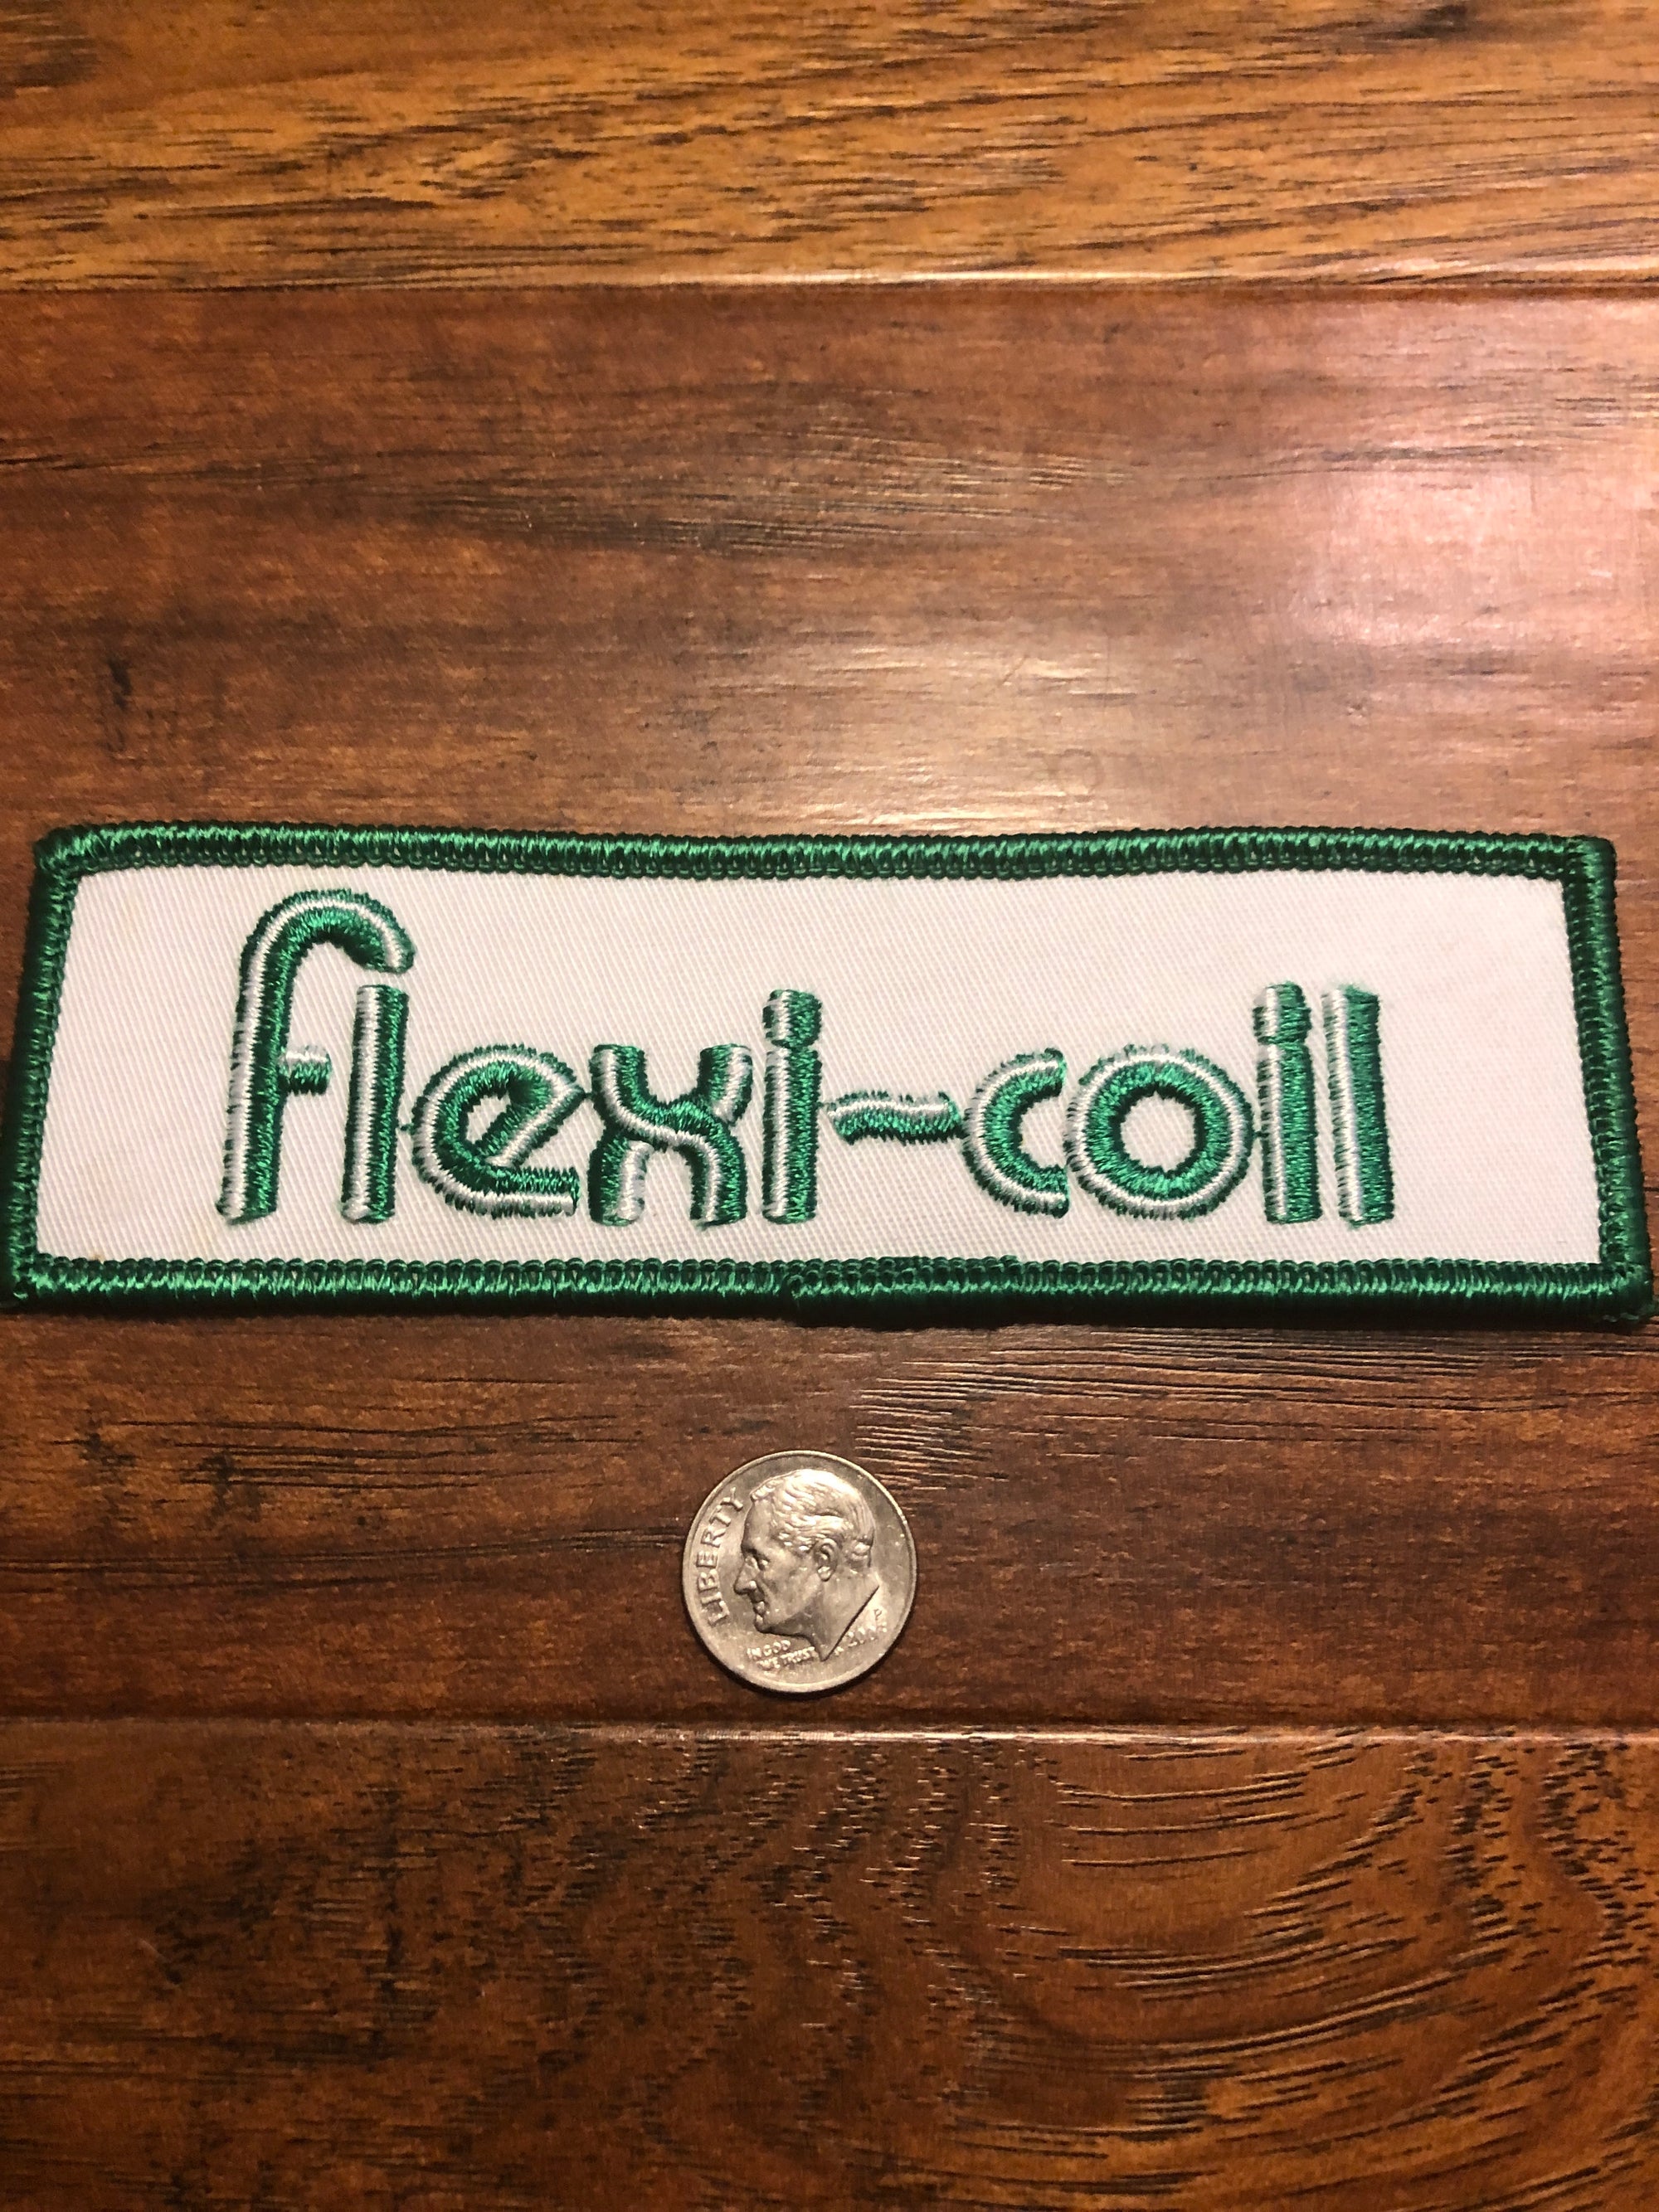 Vintage Flexi-Coil